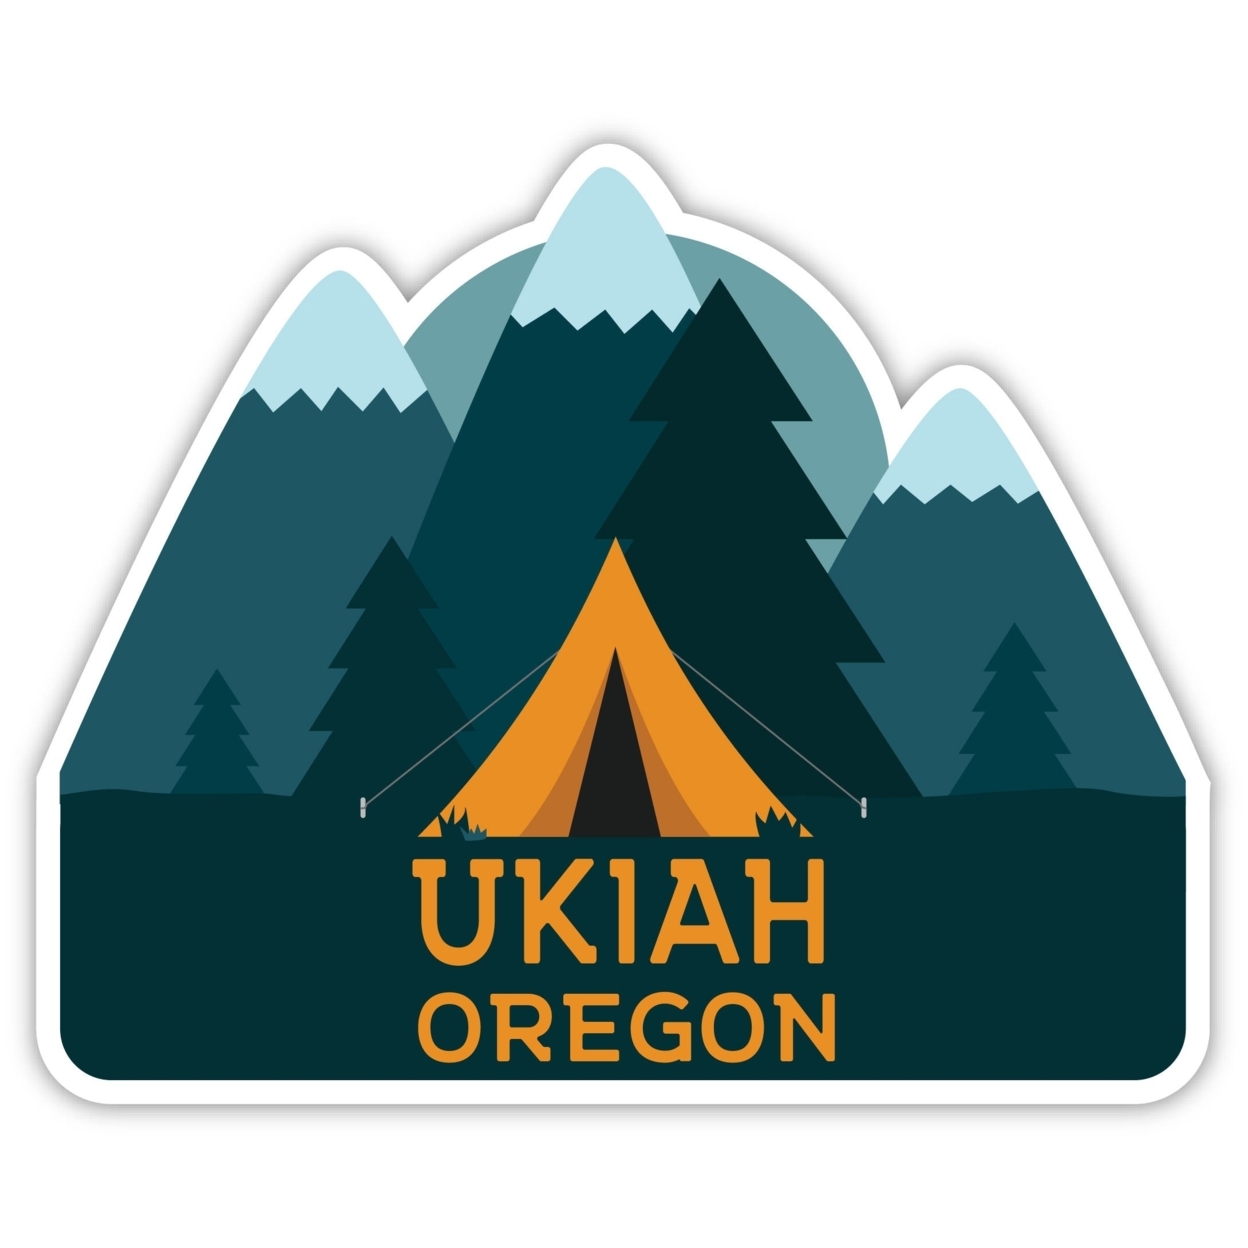 Ukiah Oregon Souvenir Decorative Stickers (Choose Theme And Size) - Single Unit, 2-Inch, Tent